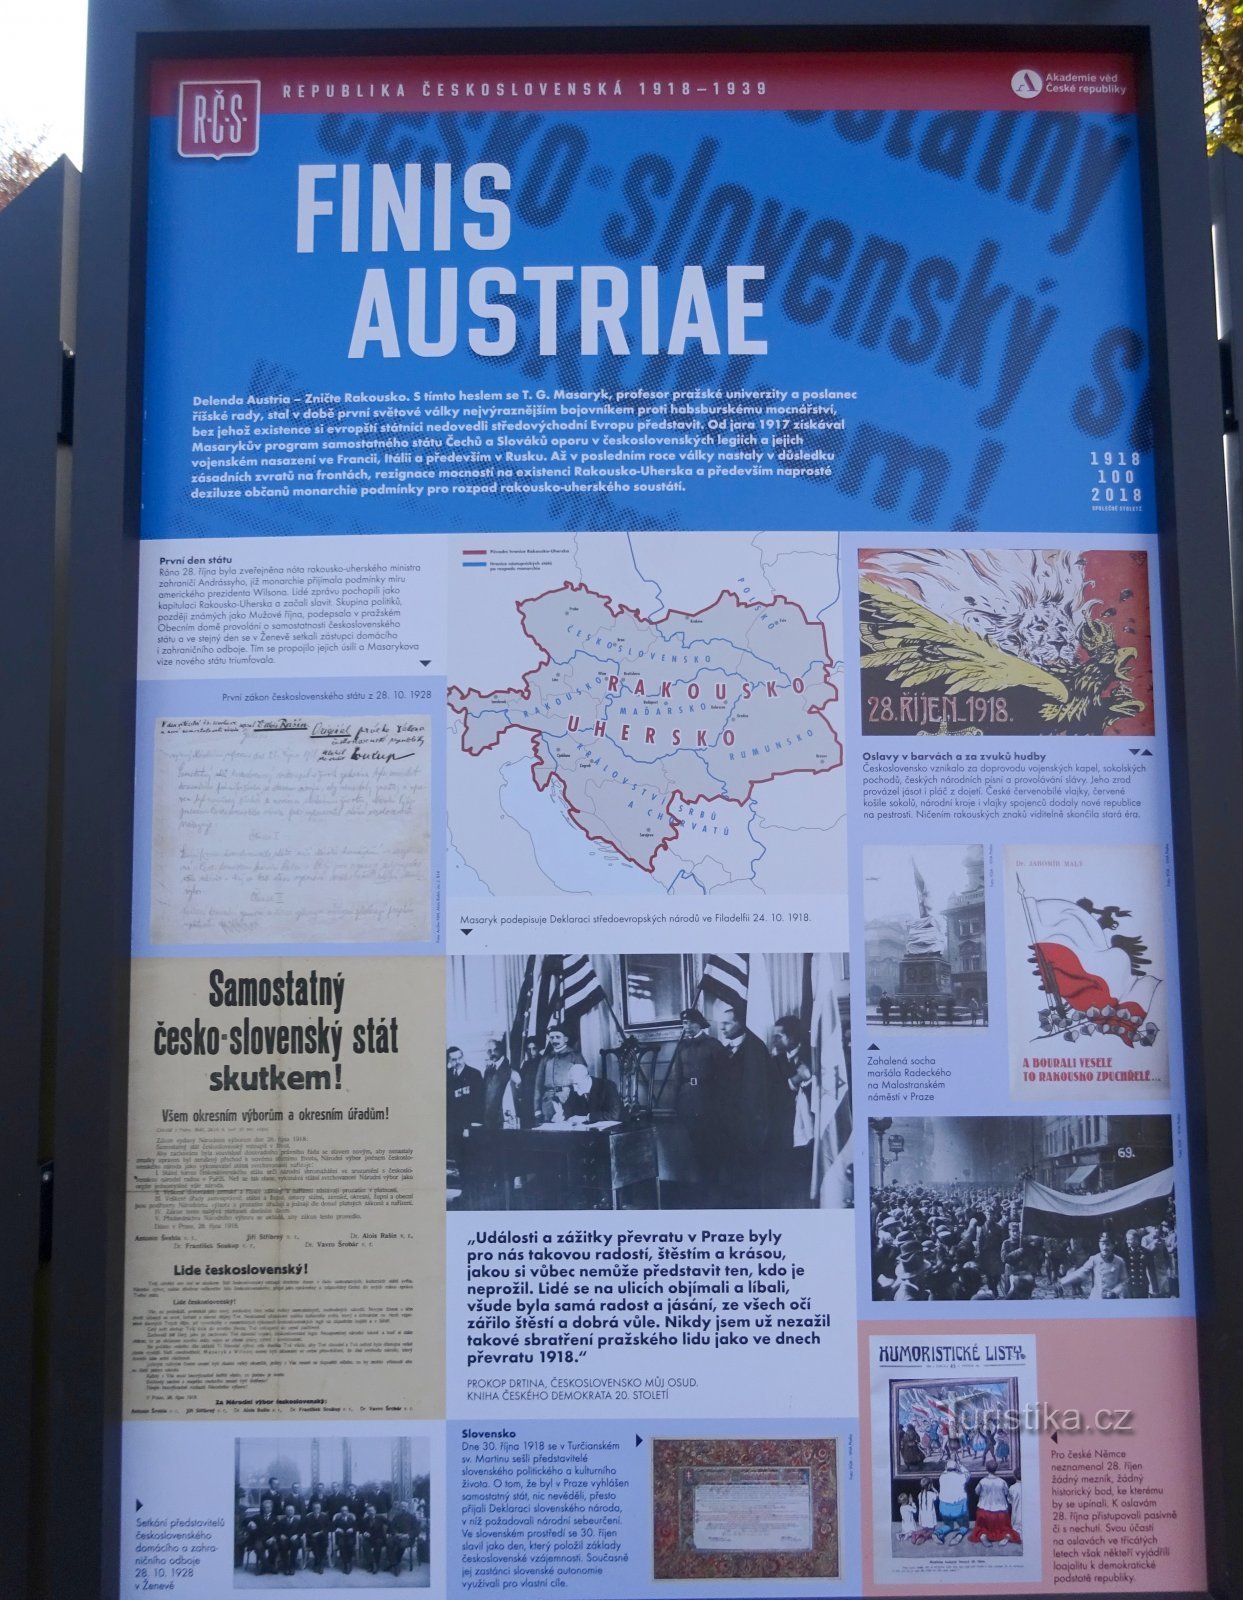 desintegração da Áustria-Hungria